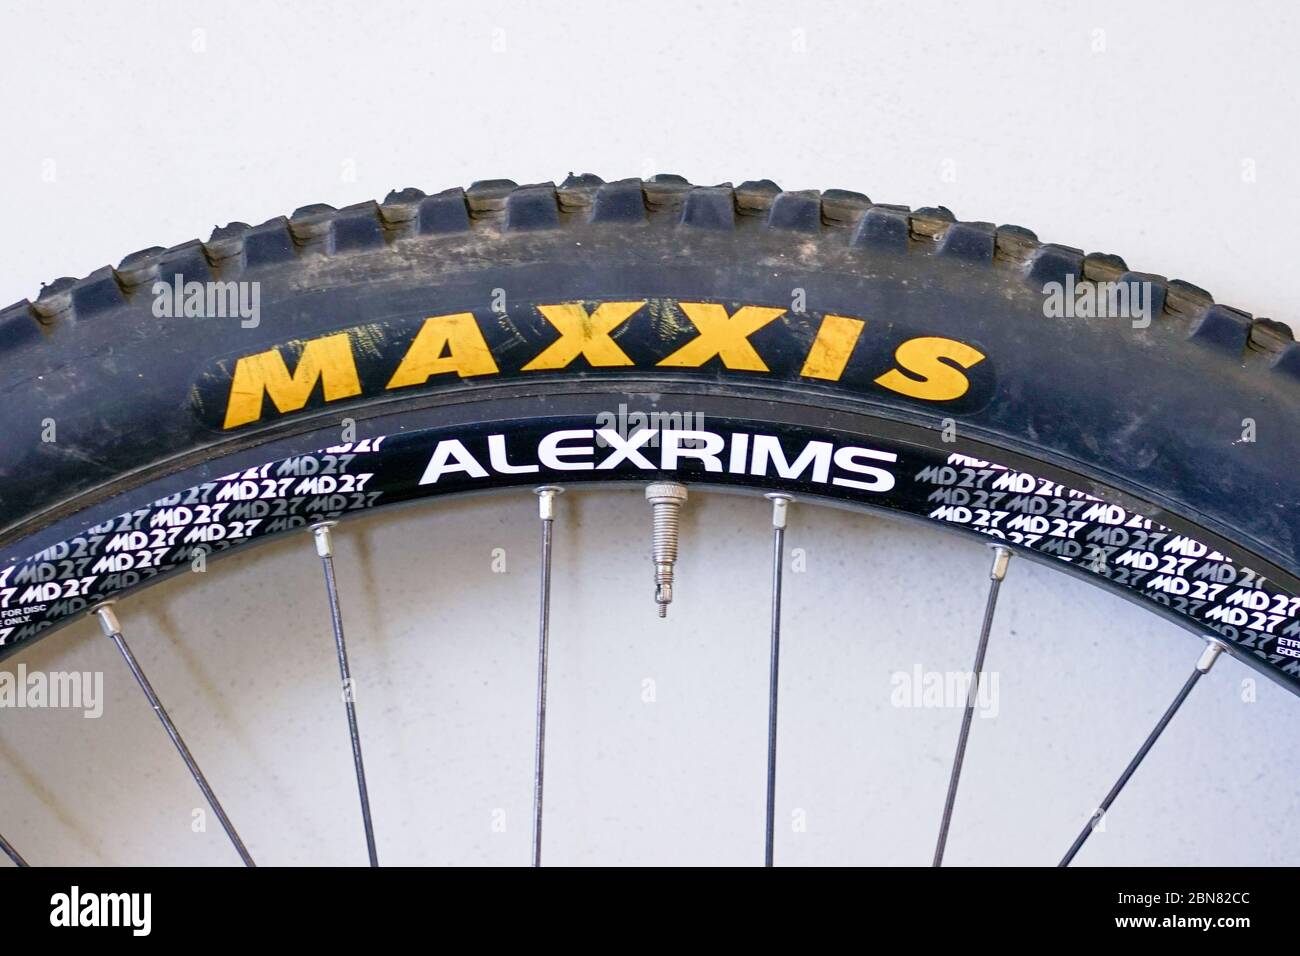 STANWELL TOPS, AUSTRALIEN - 11. Nov 2019: Alexirges mit Maxxis Reifen gebrauchten Mountainbike Stockfoto